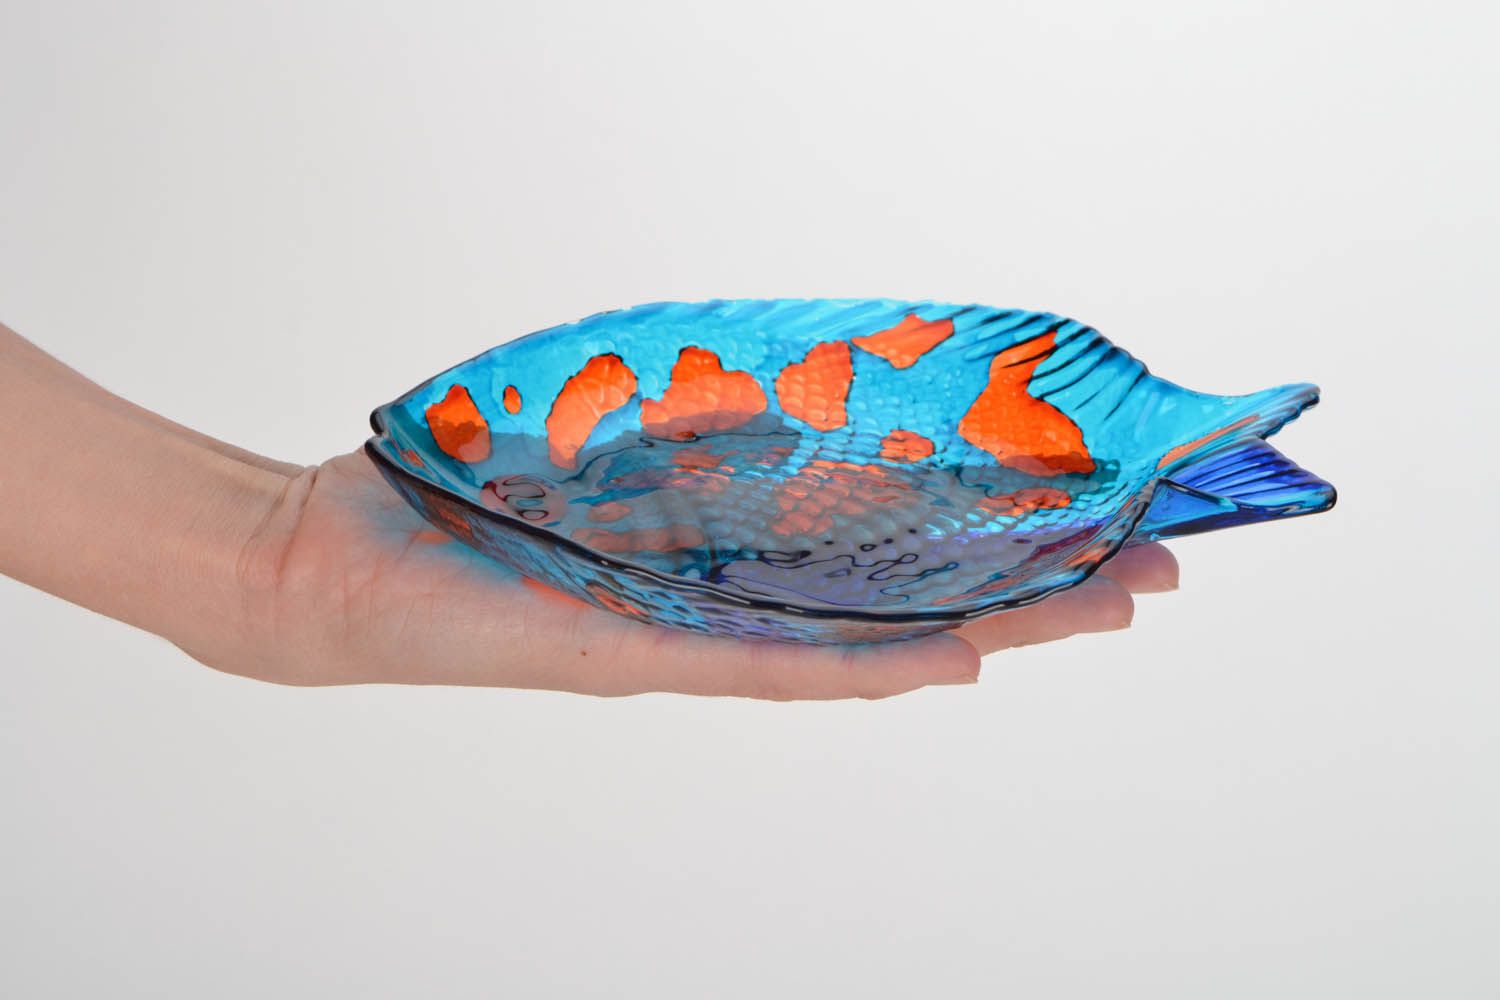 Fish-shaped glass dish photo 2